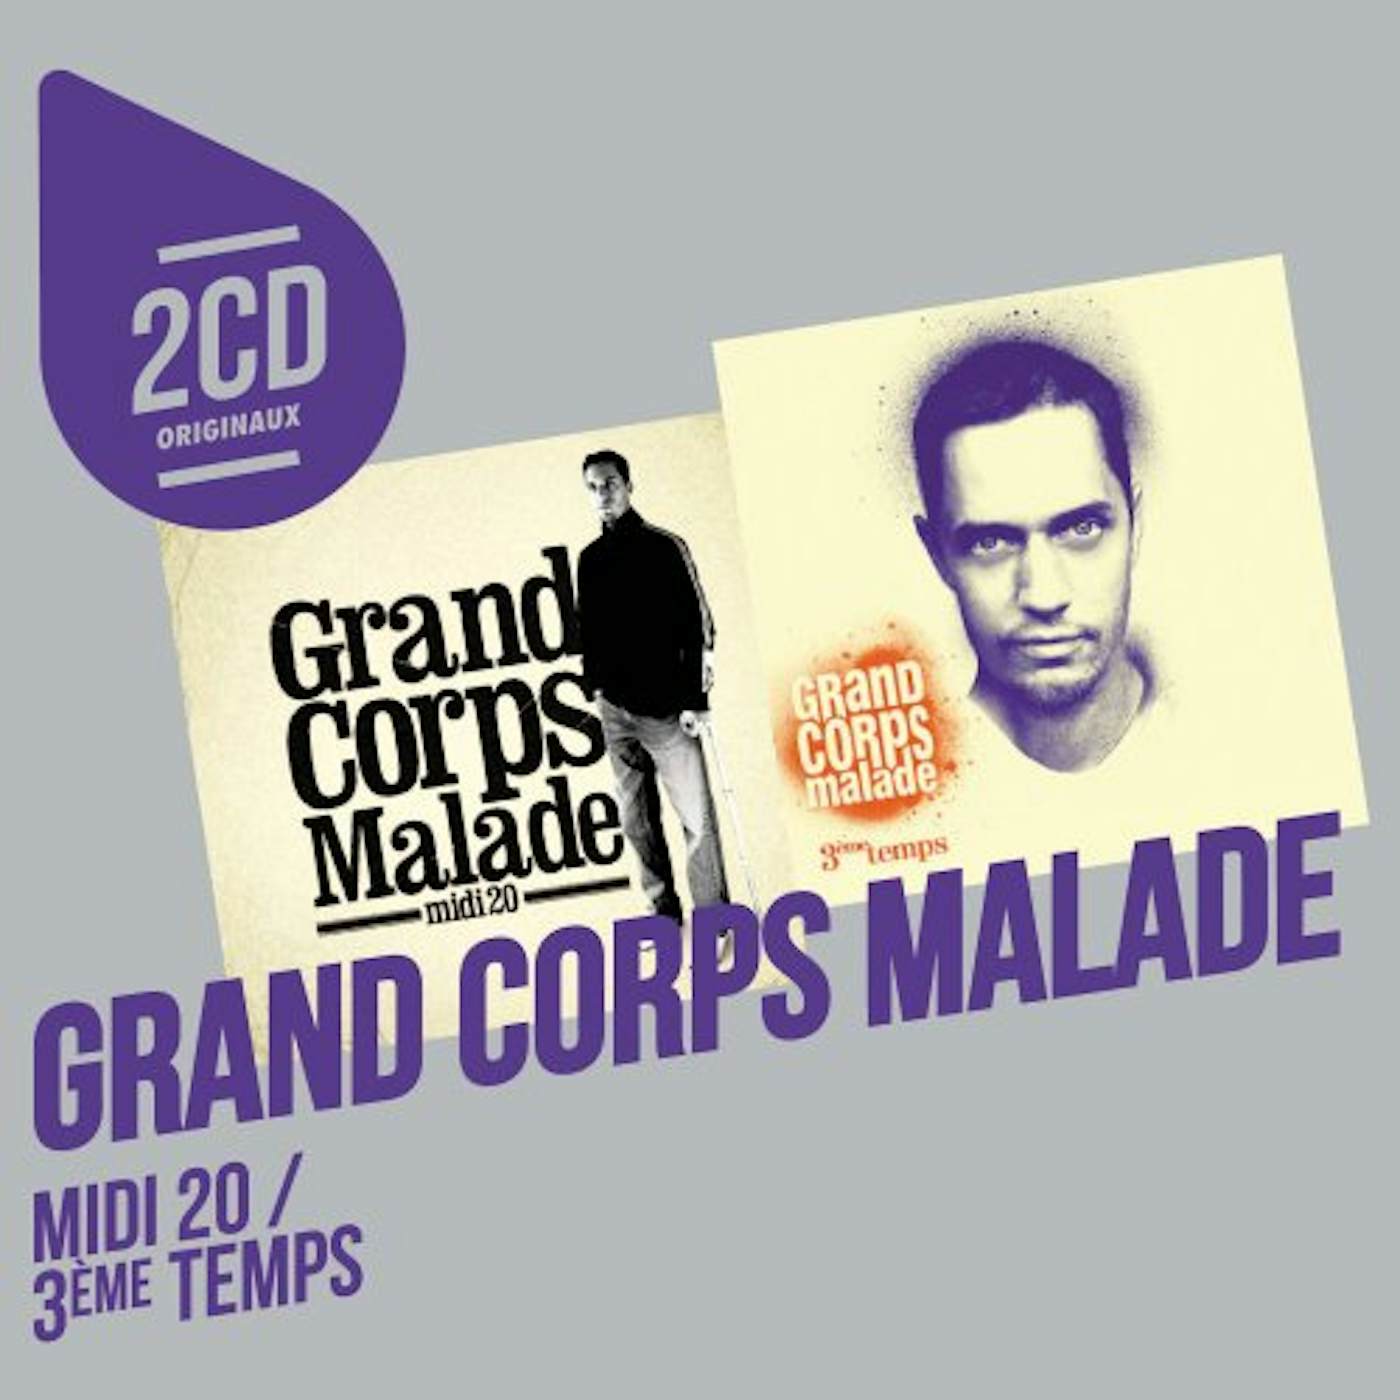 Grand Corps Malade Midi 20 Vinyl Record